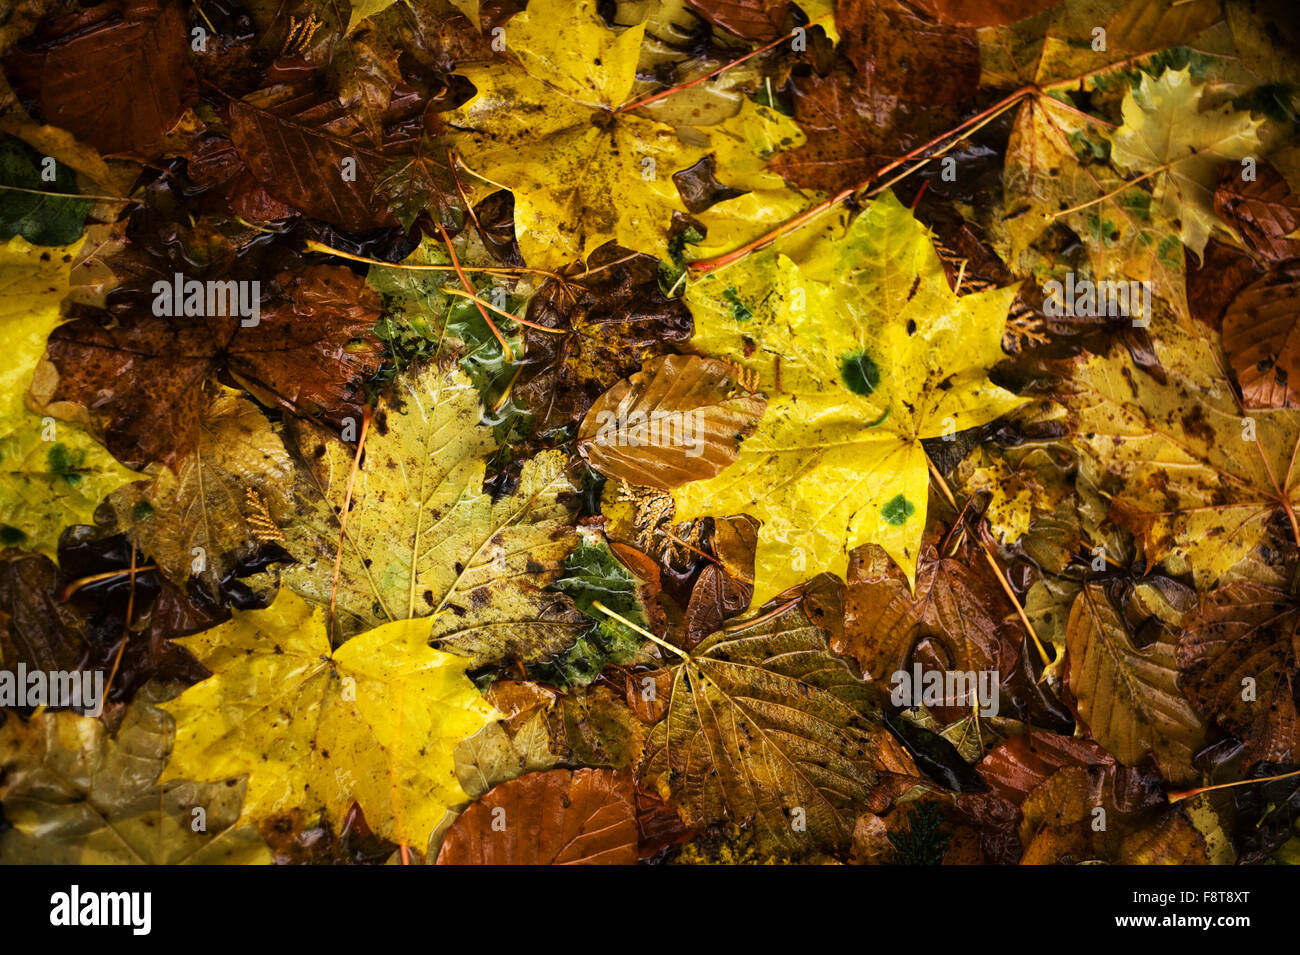 Fallen autumn leaves Stock Photo